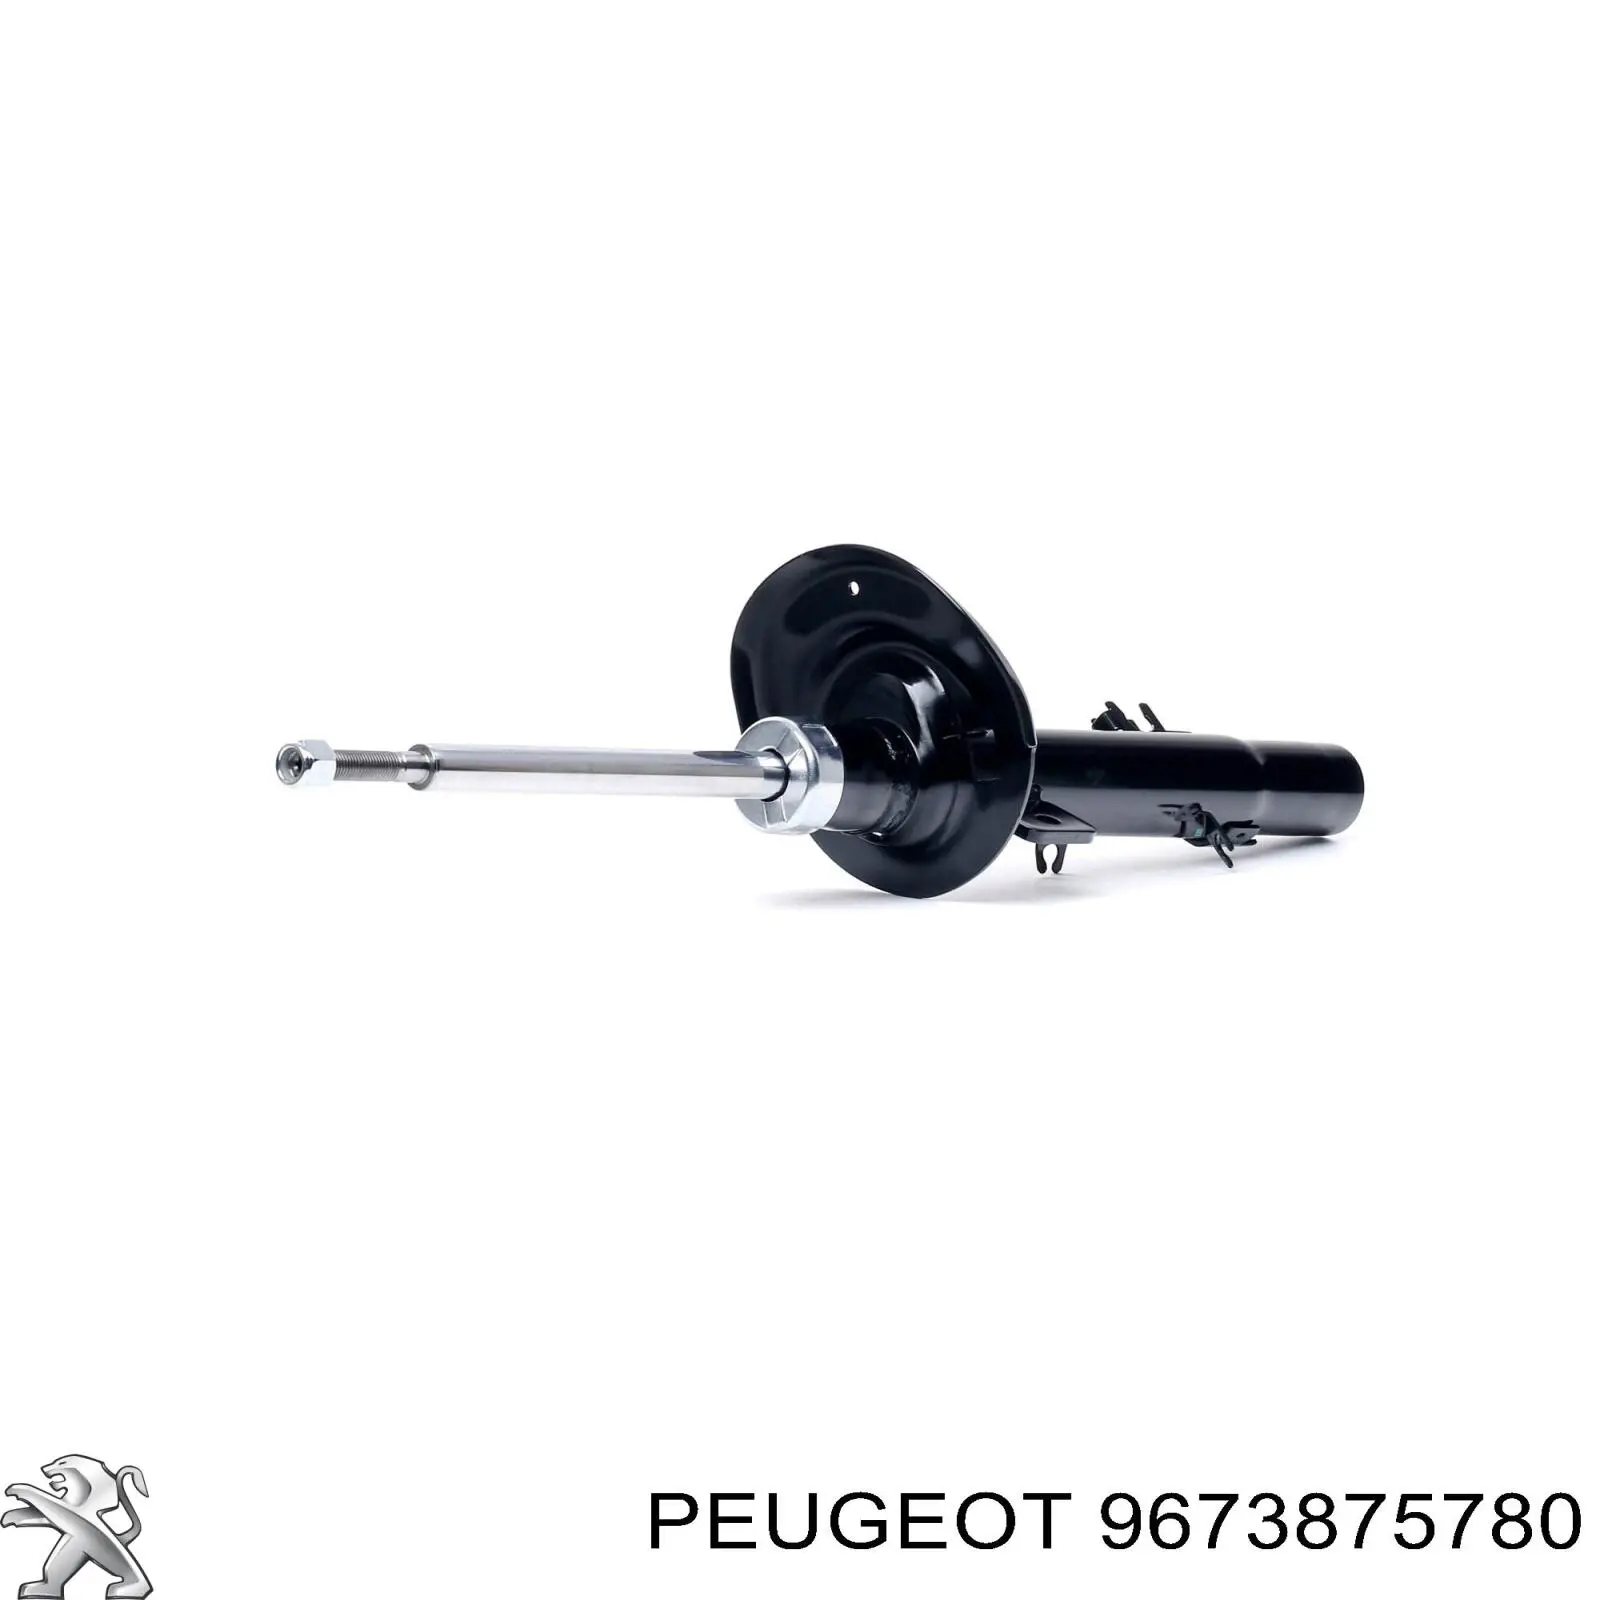 9673875780 Peugeot/Citroen амортизатор передний левый